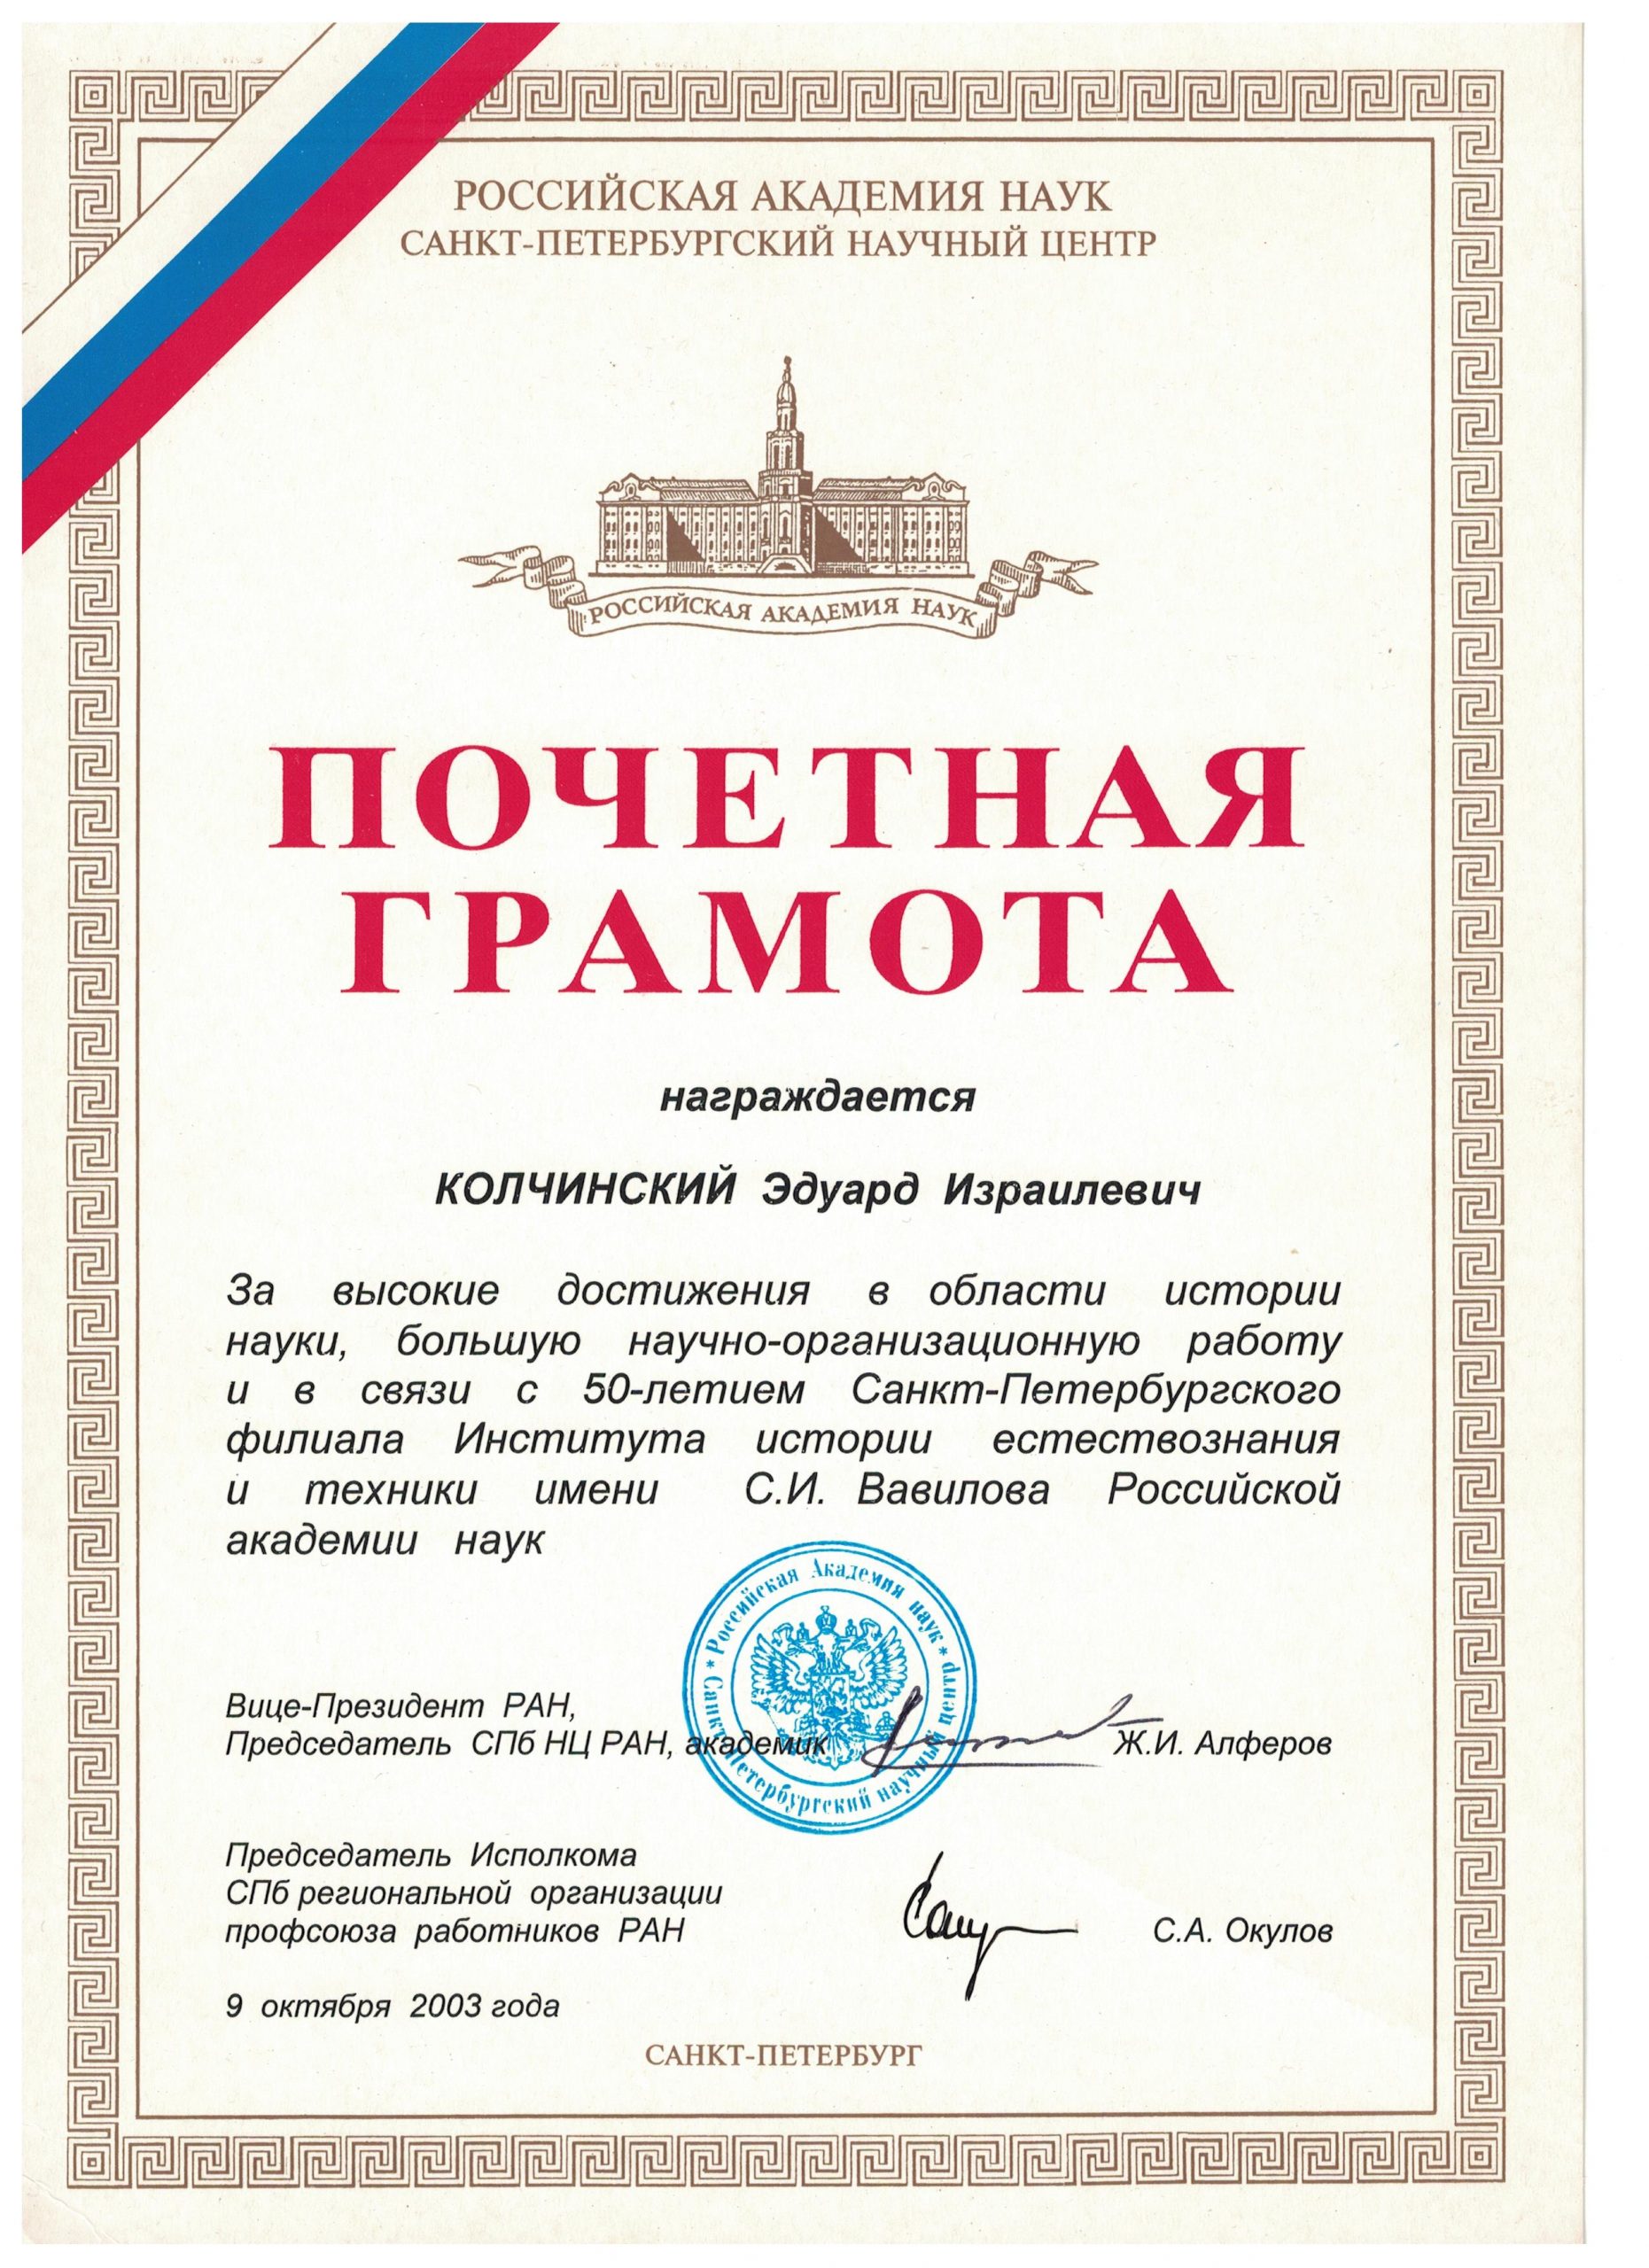 Почетная грамота РАН (2003)(1)